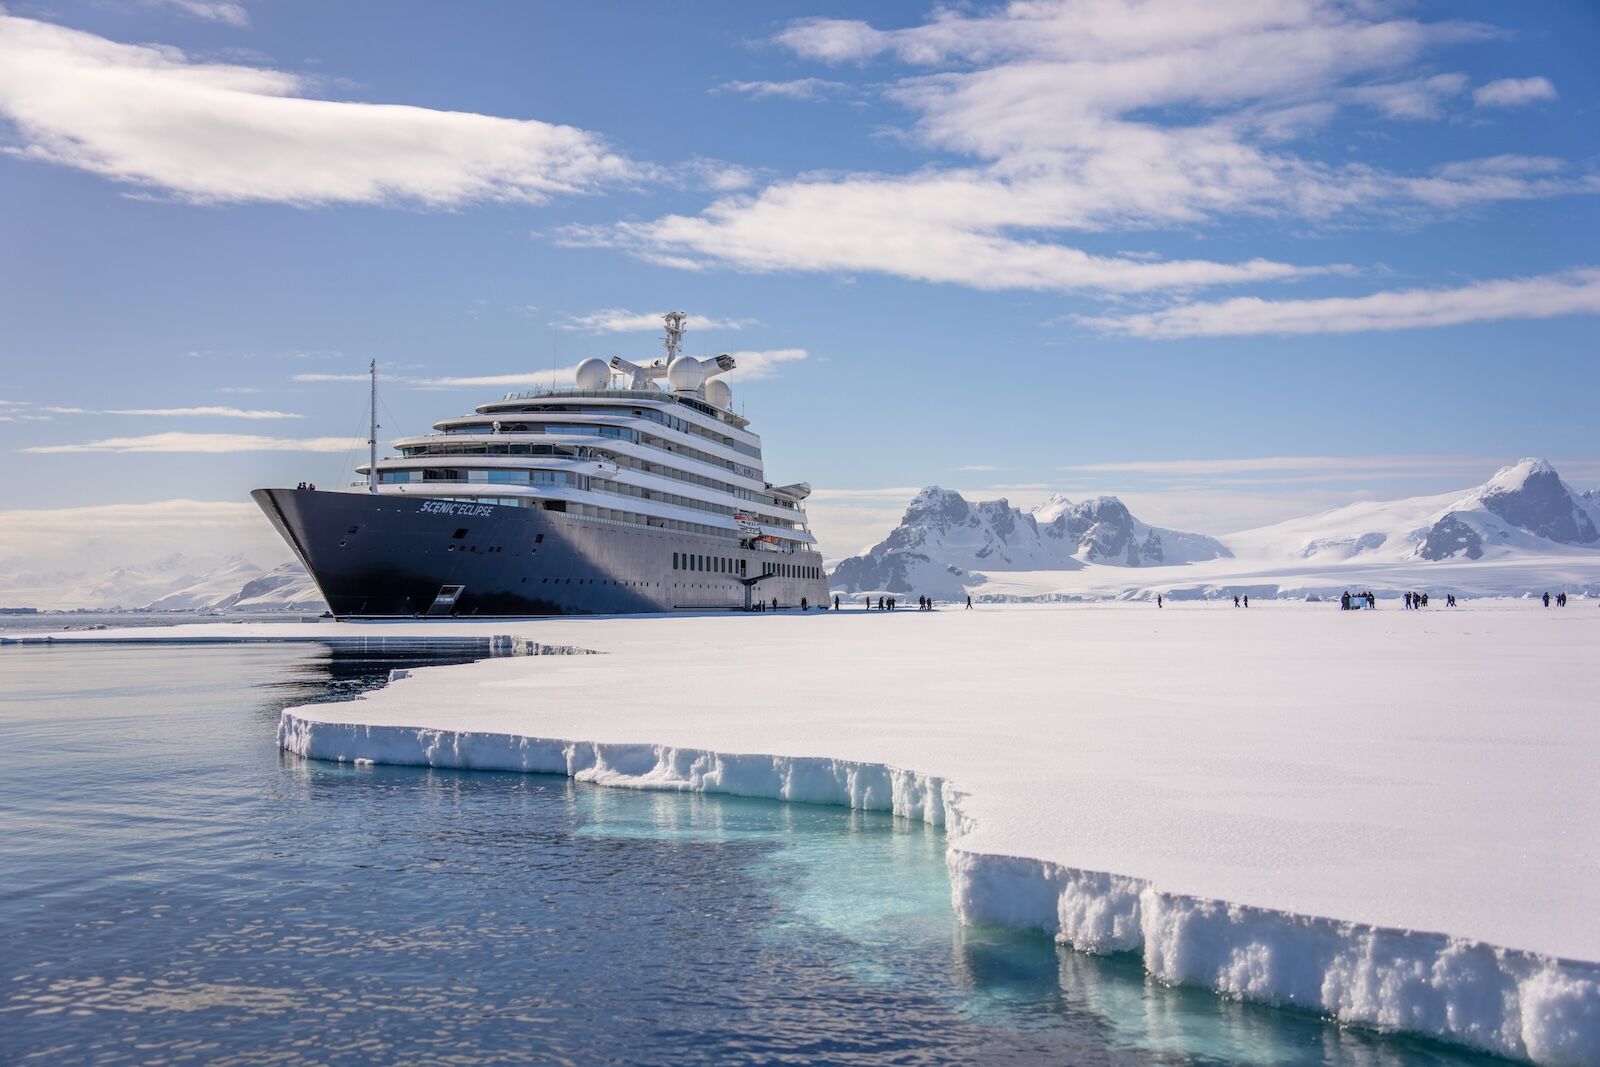 Scenic Eclipse cruise ship in Antarctica